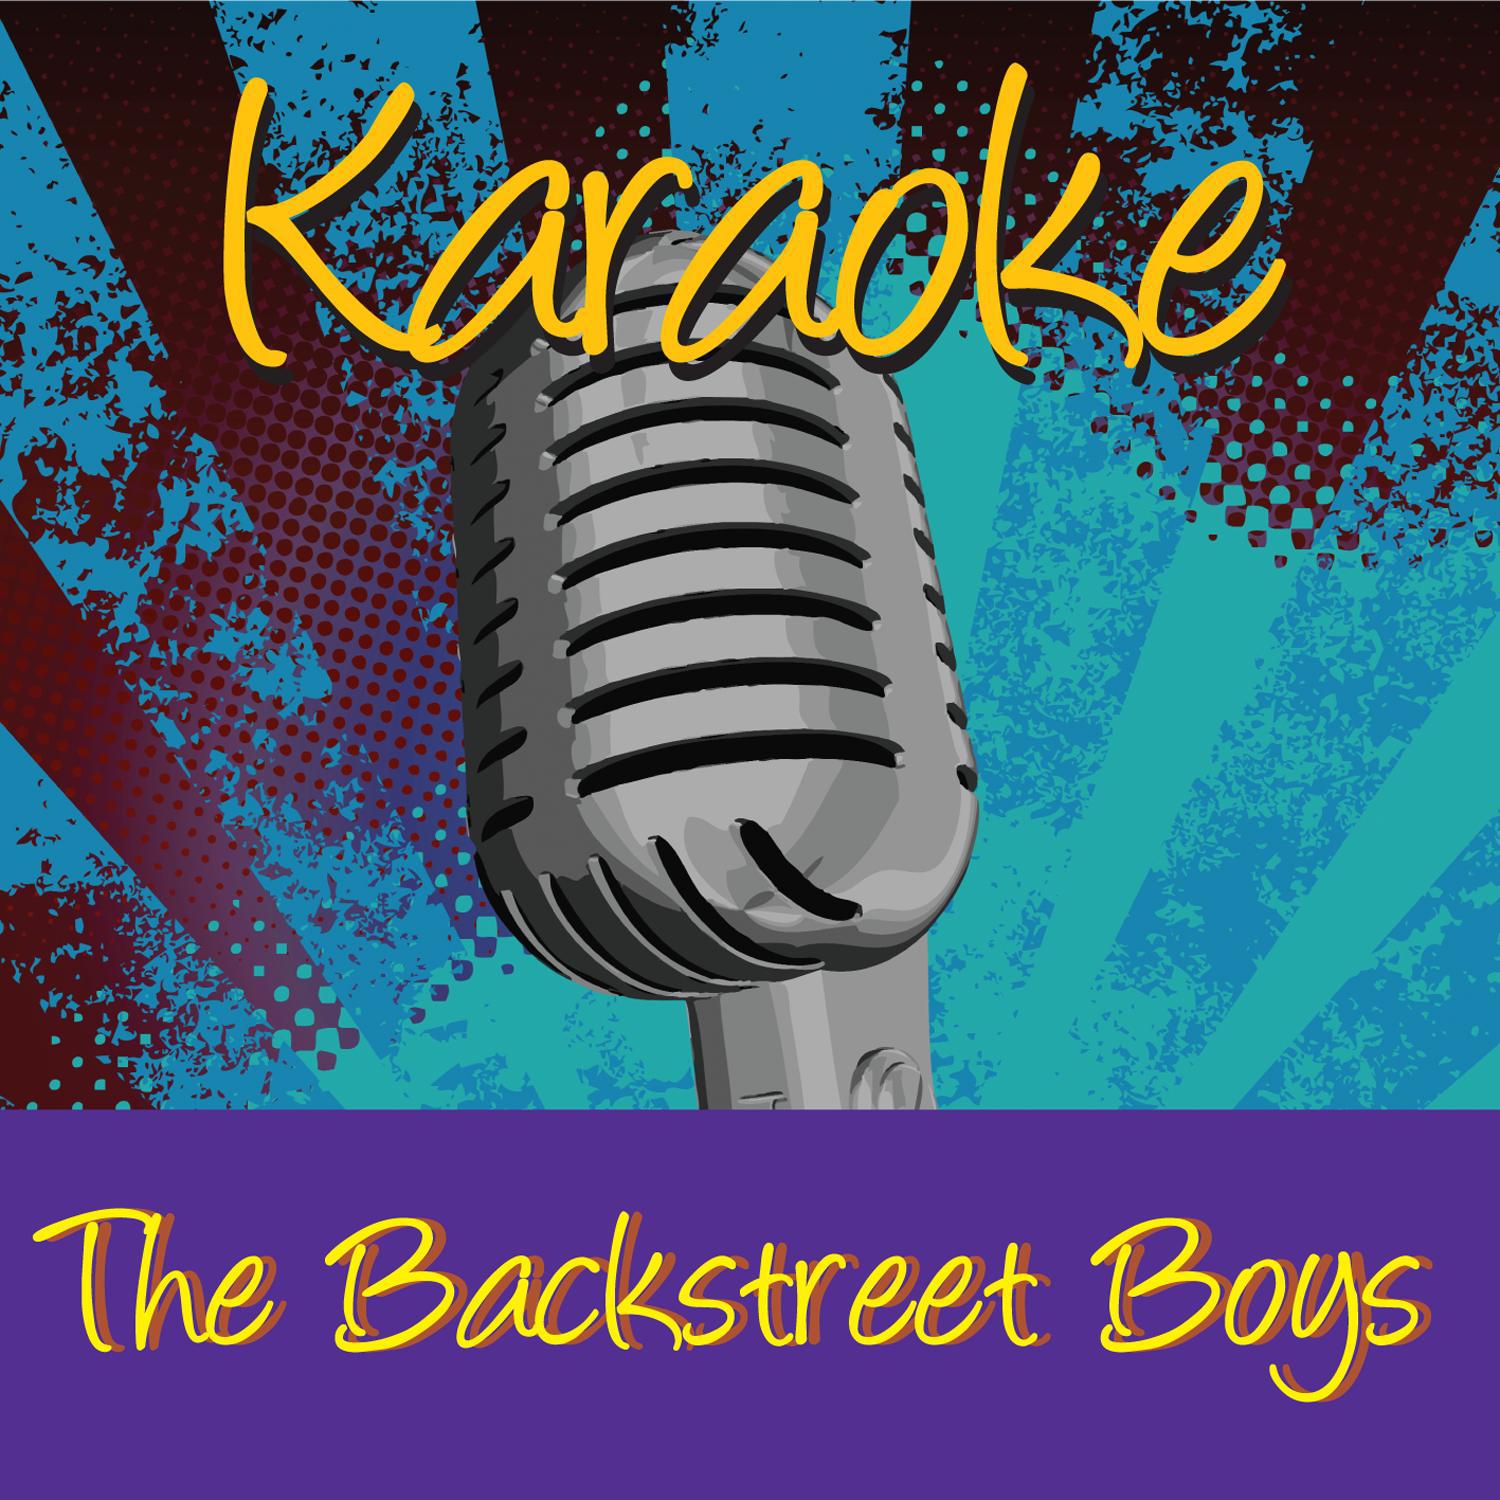 Karaoke - Backstreet Boys